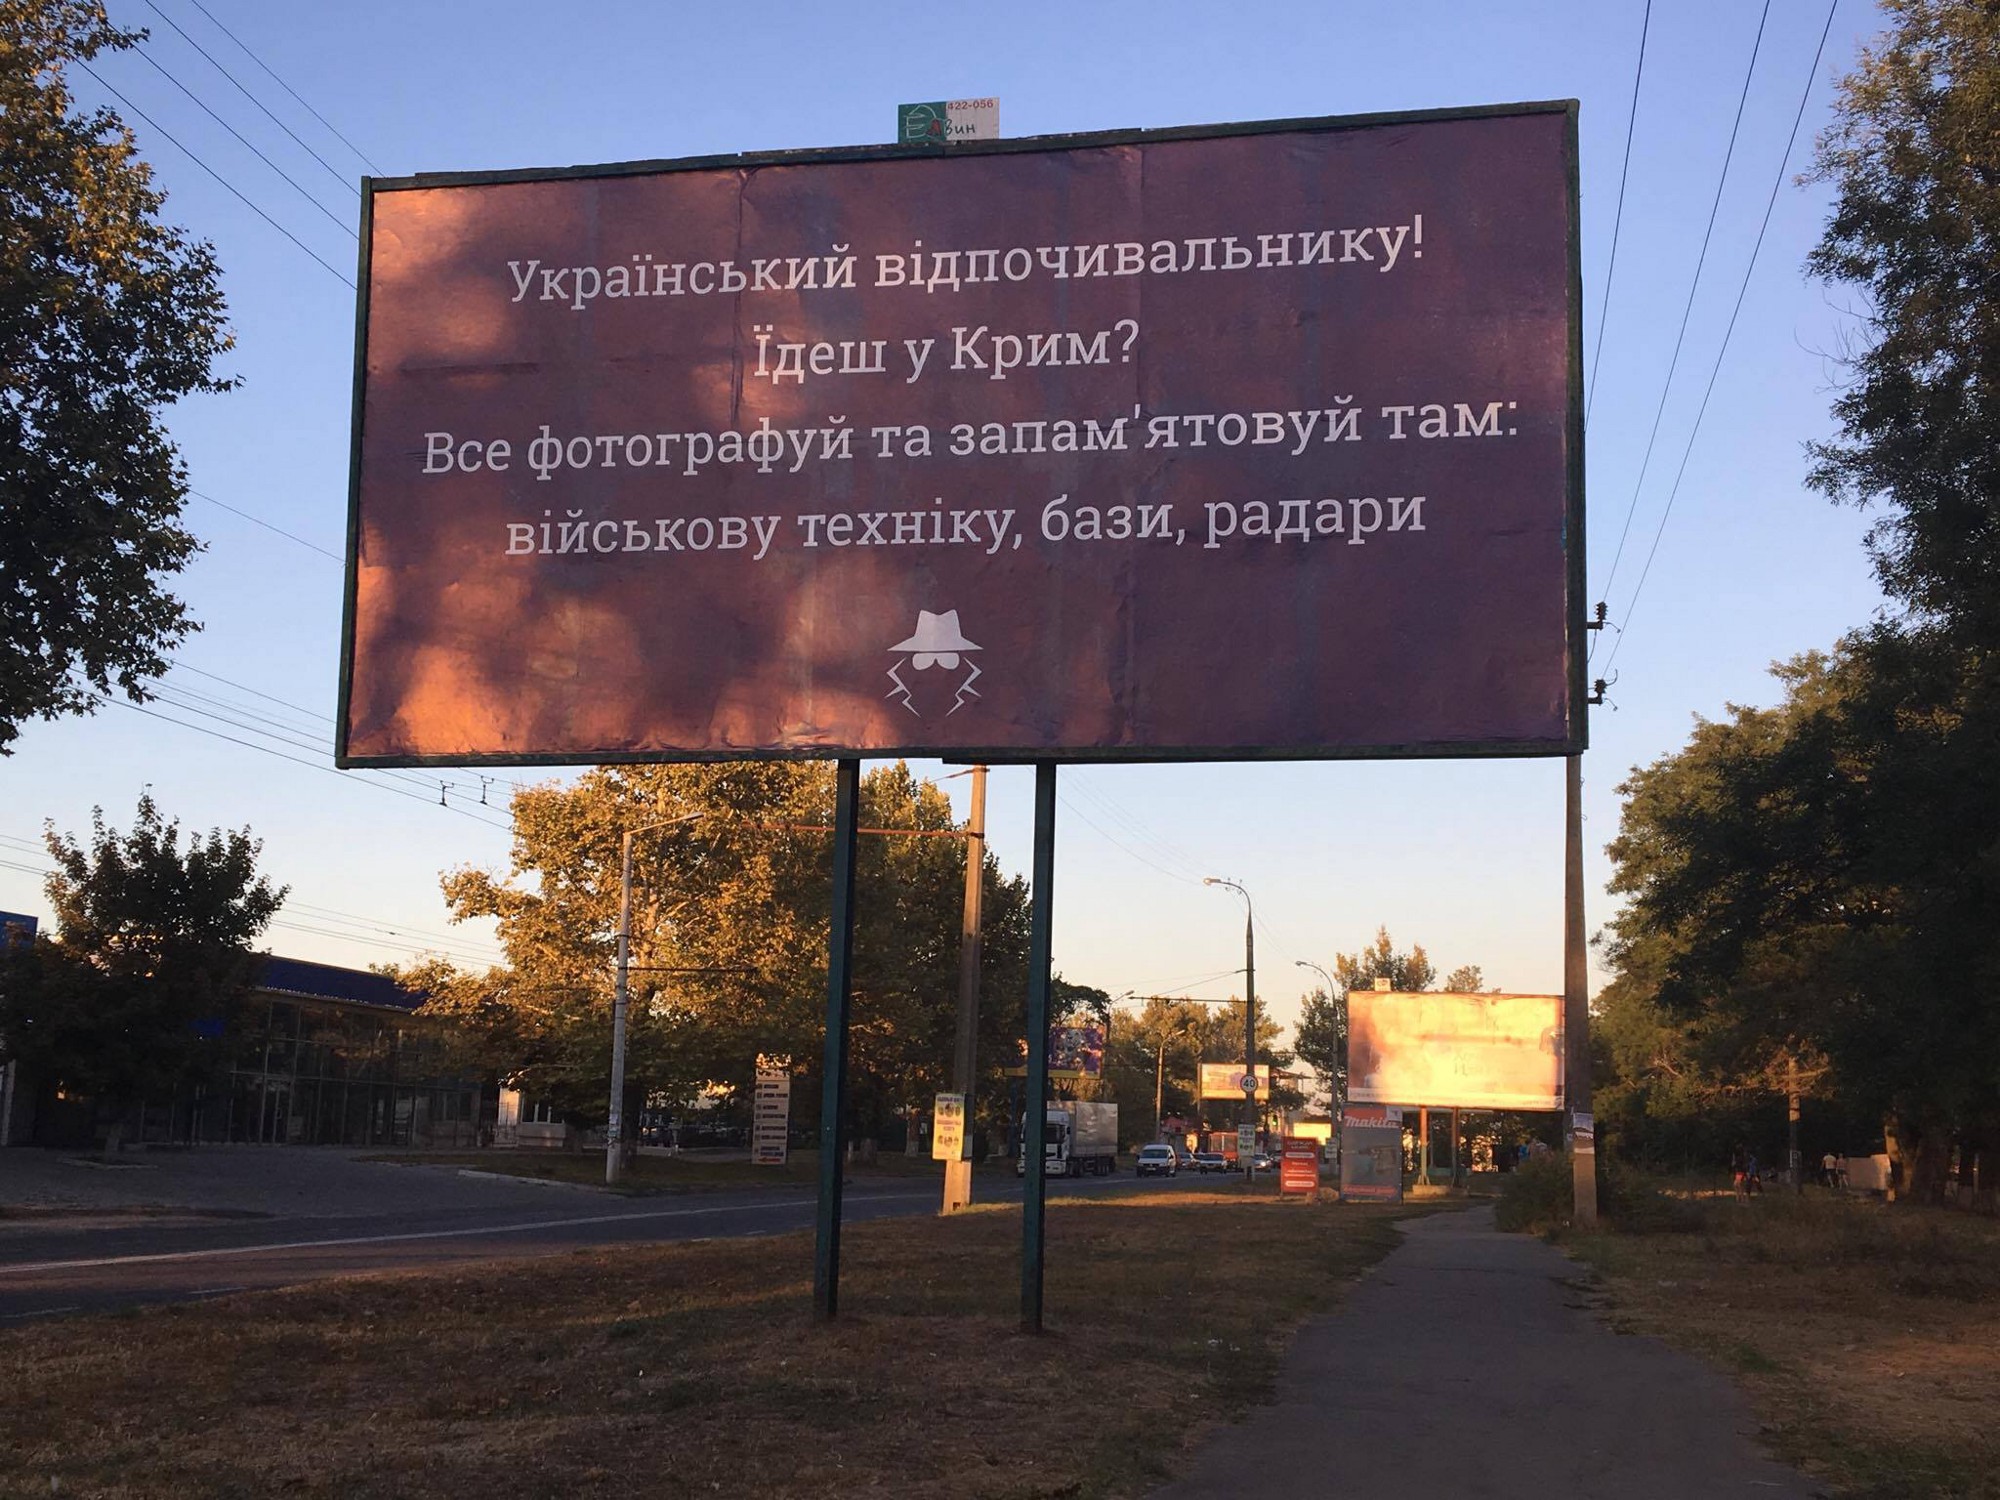 «Украинский отдыхающий! Едешь в Крым? Все там фотографируй и запоминай: военную технику, базы, радары» — фото со страницы Антона Годзы в Фейсбуке (источник).